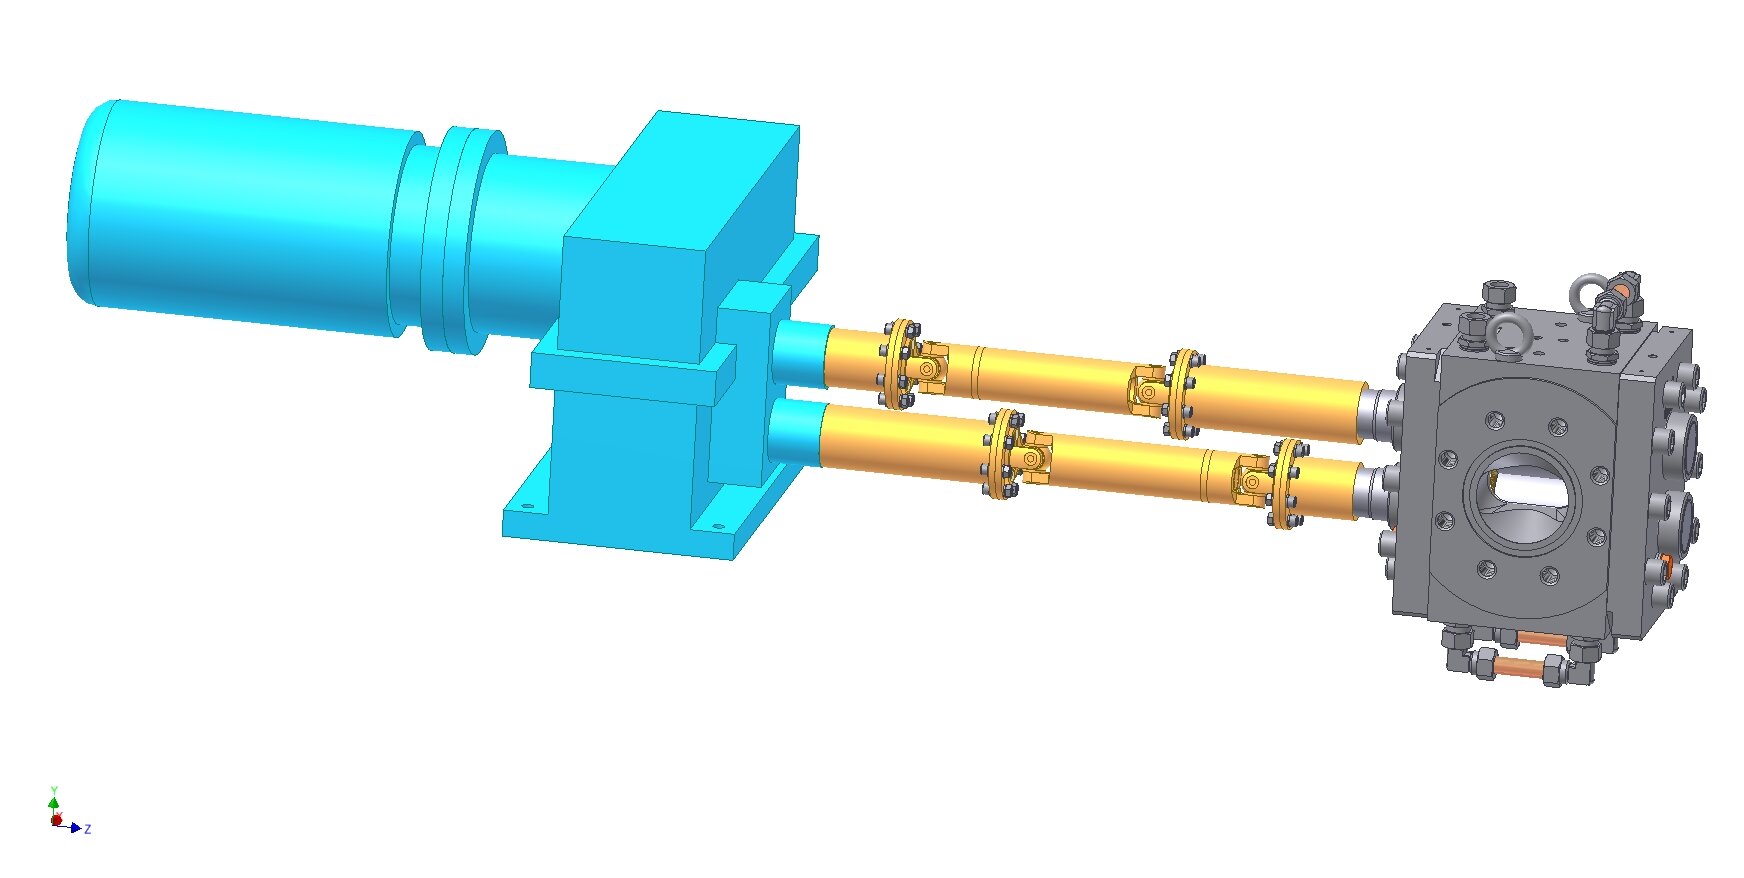  Eprotec Zahnradpumpe für die Kunststoffplatten-Extrusion (Extrusionszahnradpumpe) mit Steuergetriebe (Doppelantrieb) für die X-LDPE-Produktion